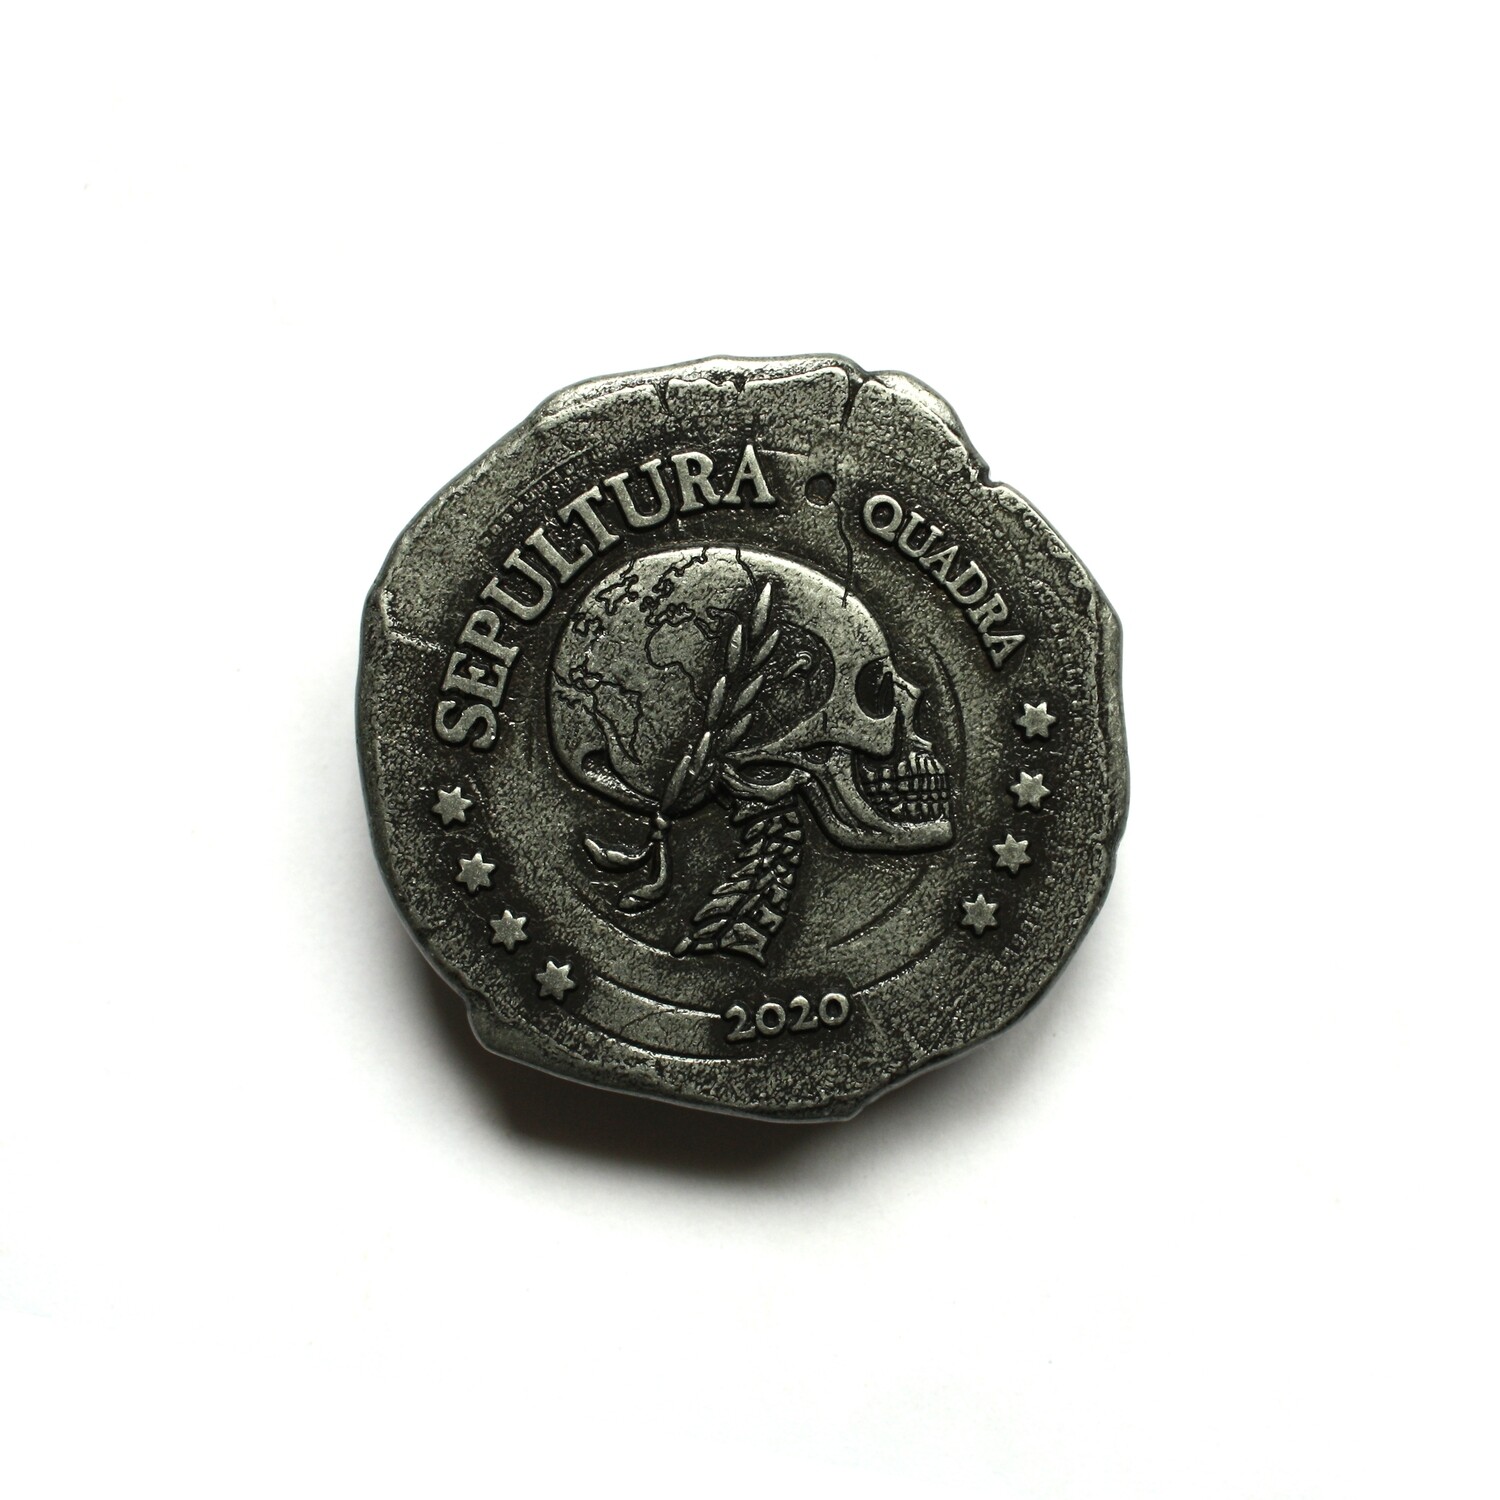 Sepultura - Quadra Official Pin